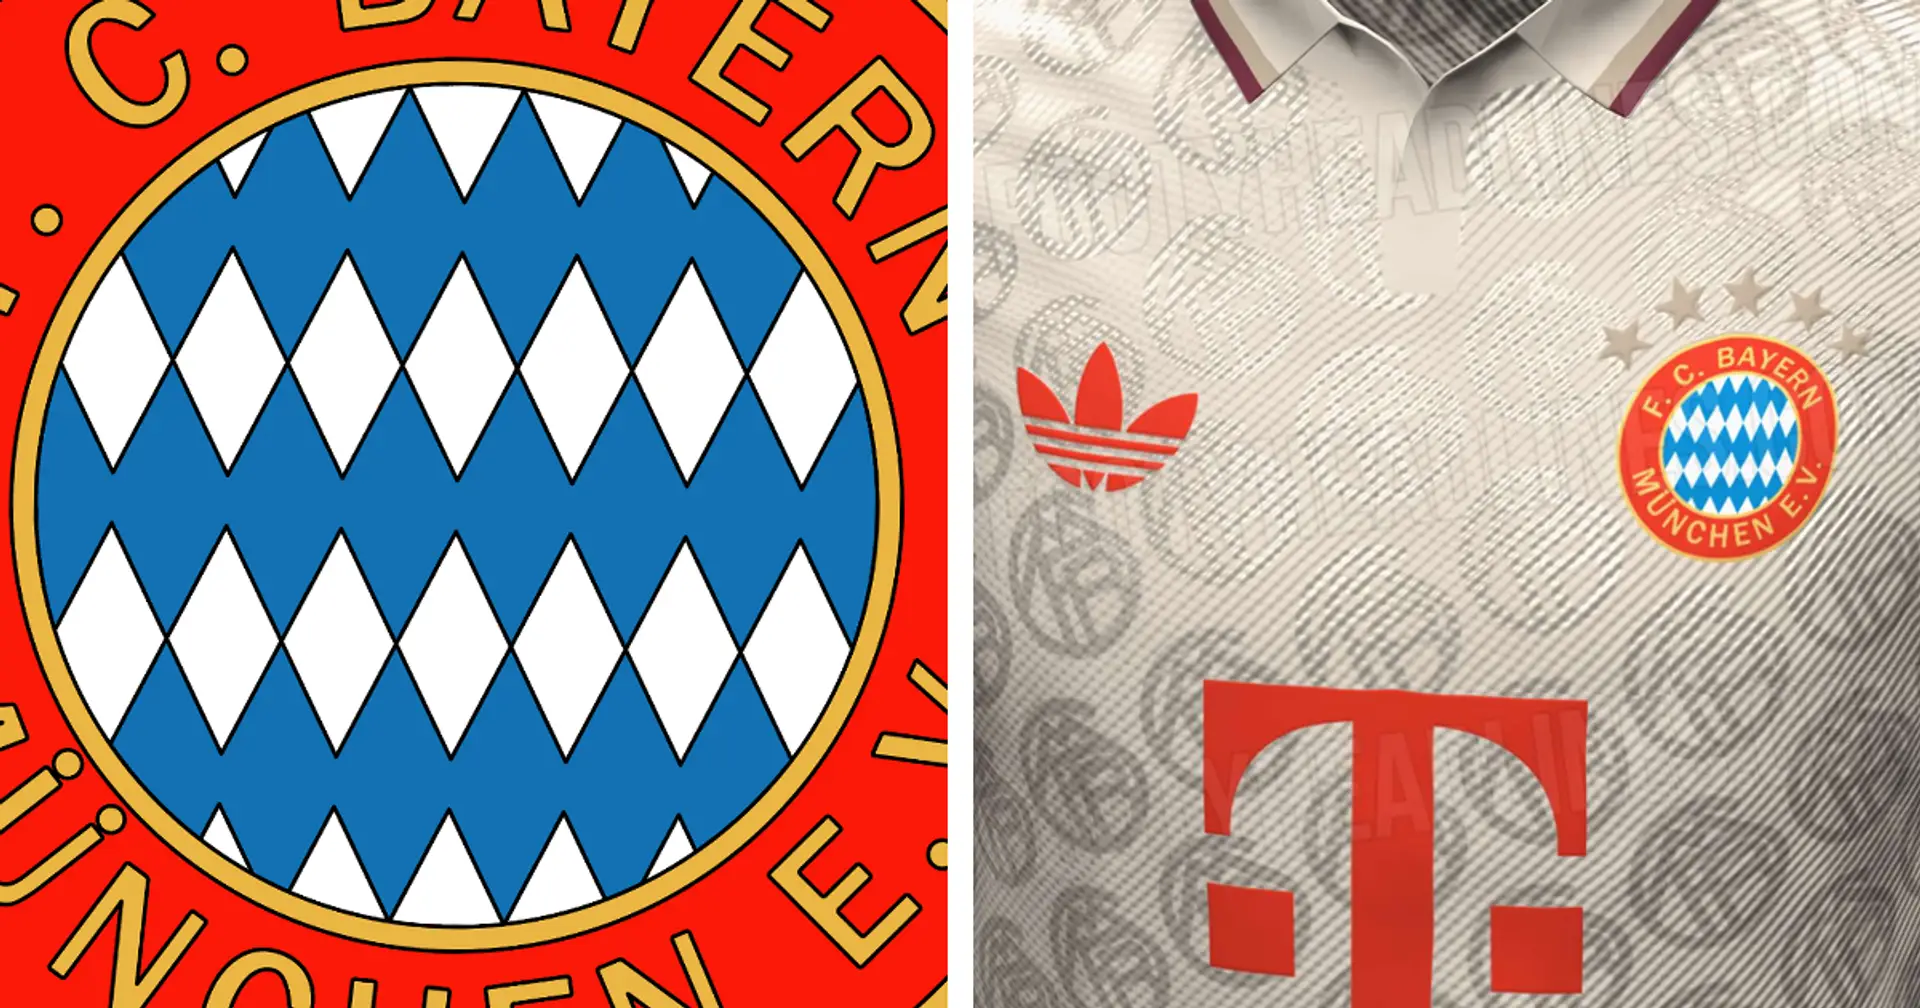 Top-Quelle sagt vorher: So könnte das dritte Trikot der Bayern in der neuen Saison aussehen